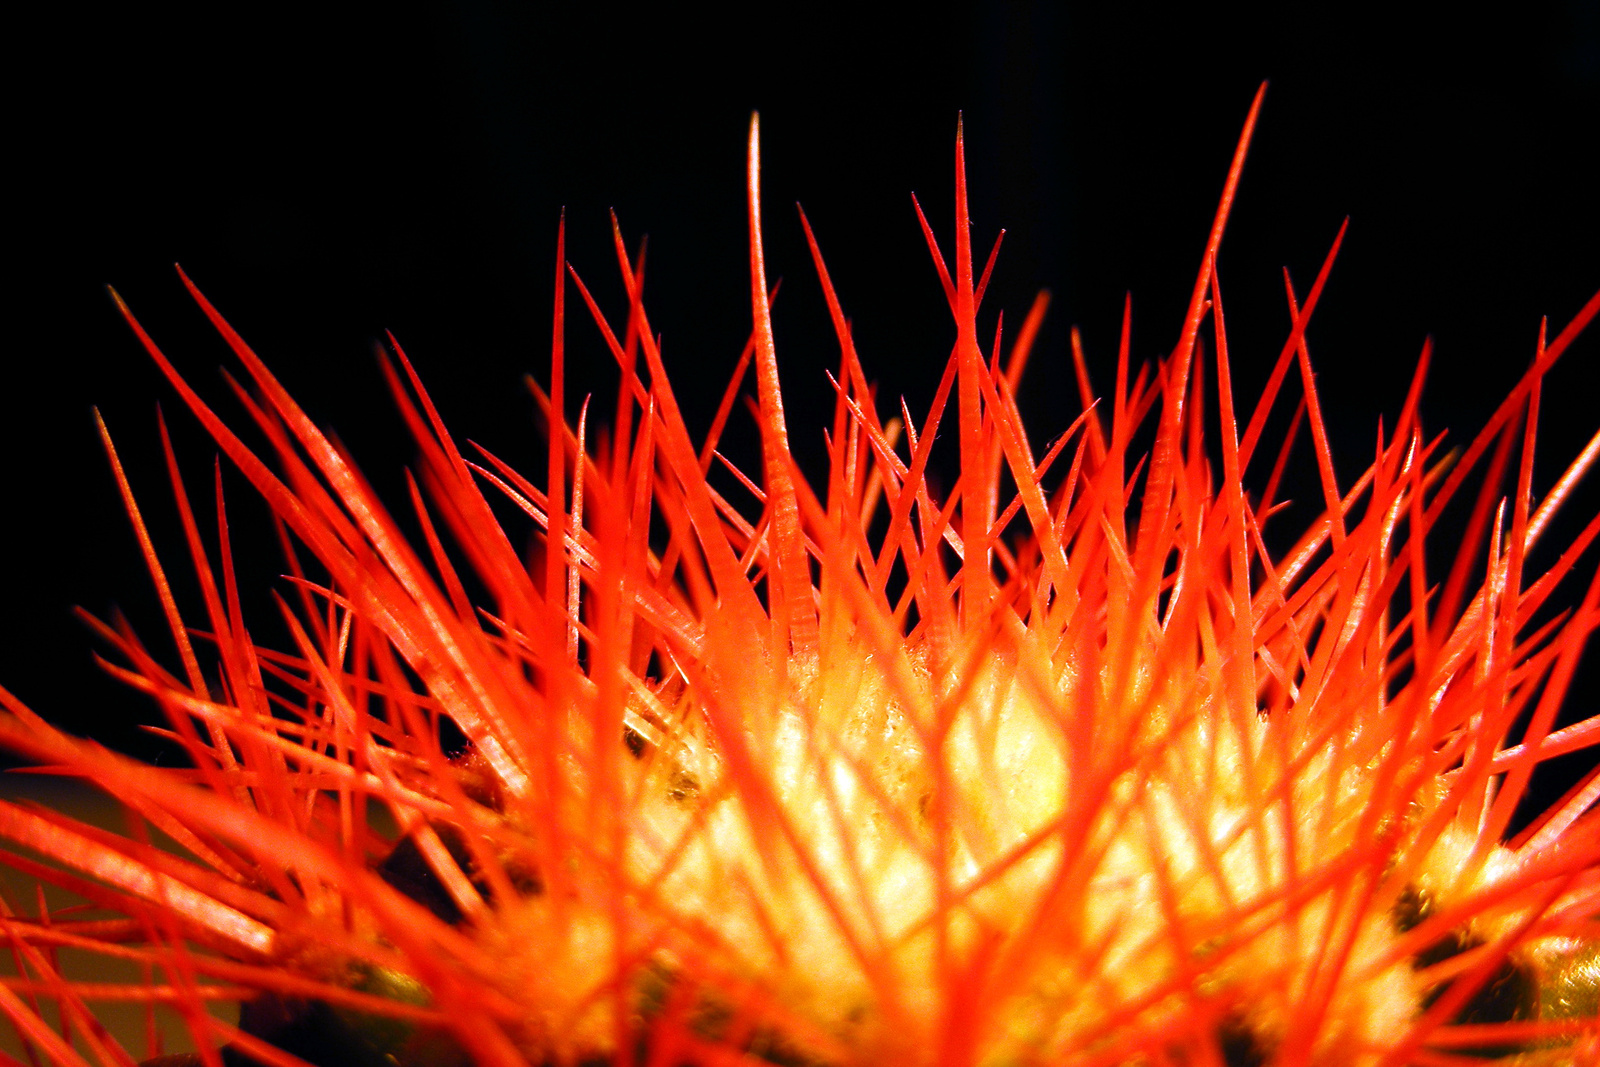 | Elkeveredett fotók #9 - Mérges kaktusz |